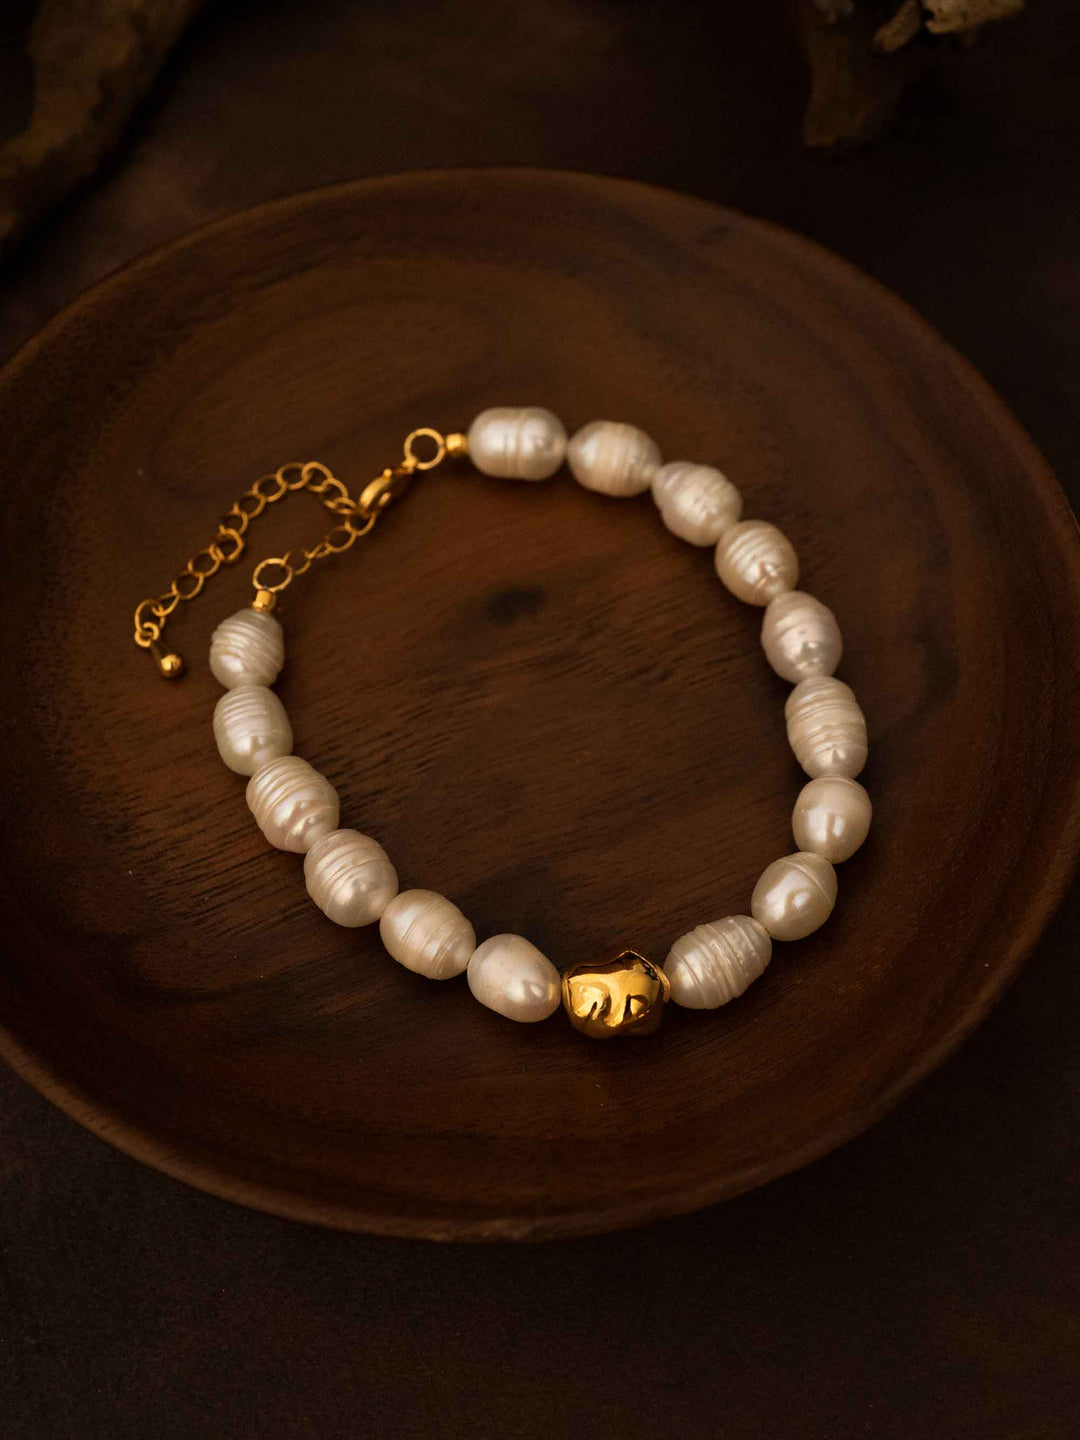 A pearl beaded bracelet